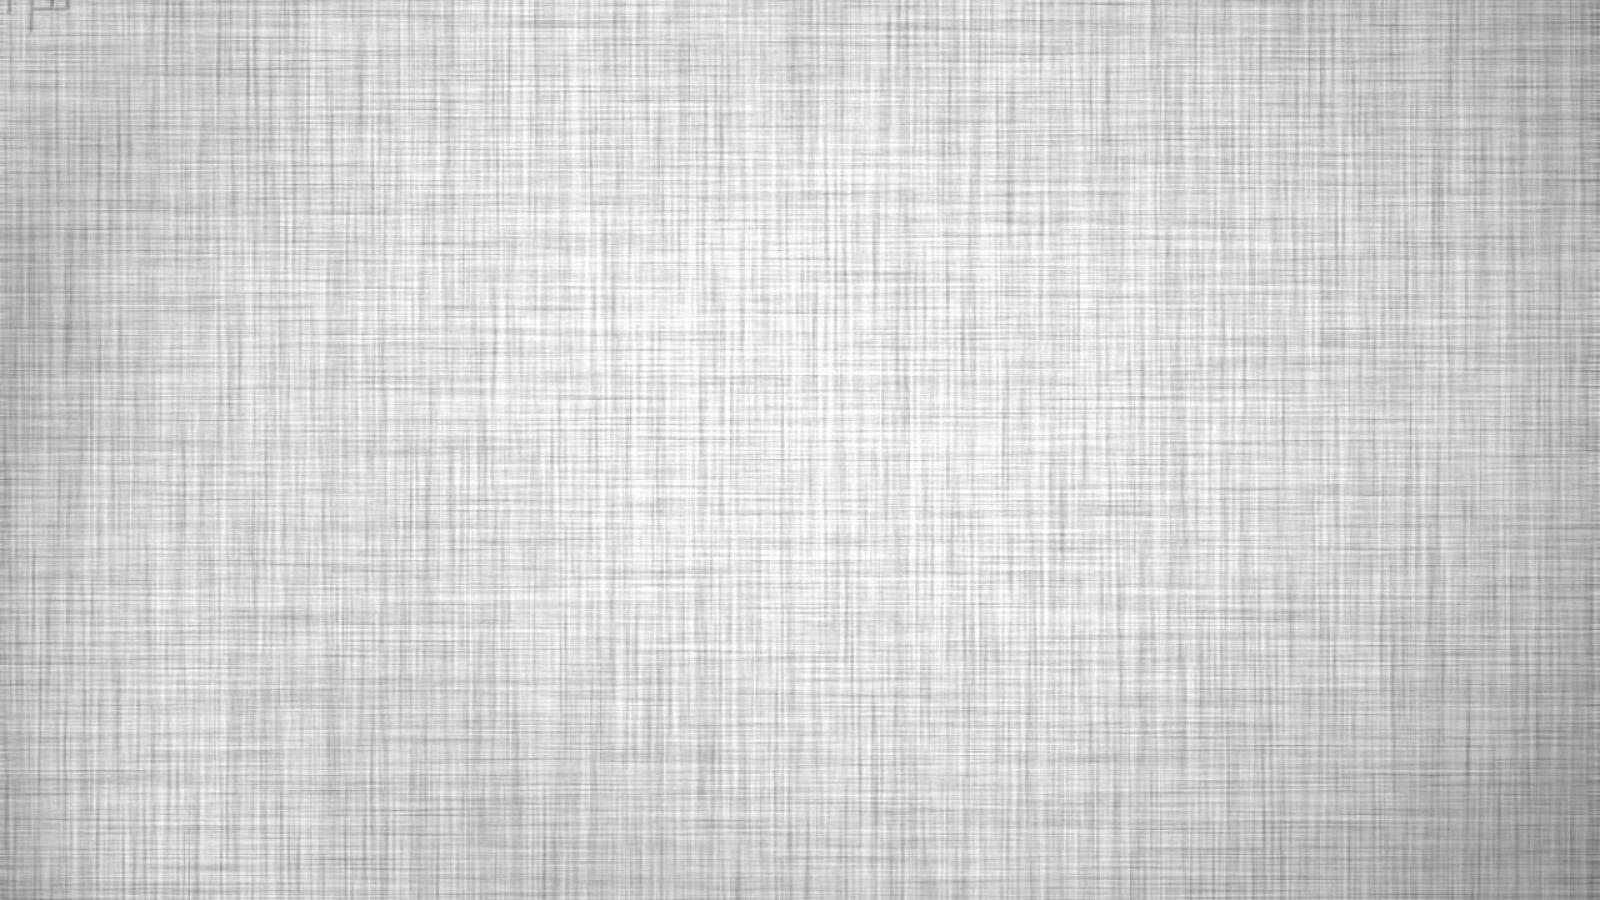 Plain White Background Wallpaper Hd 2020 Live Wallpaper Hd